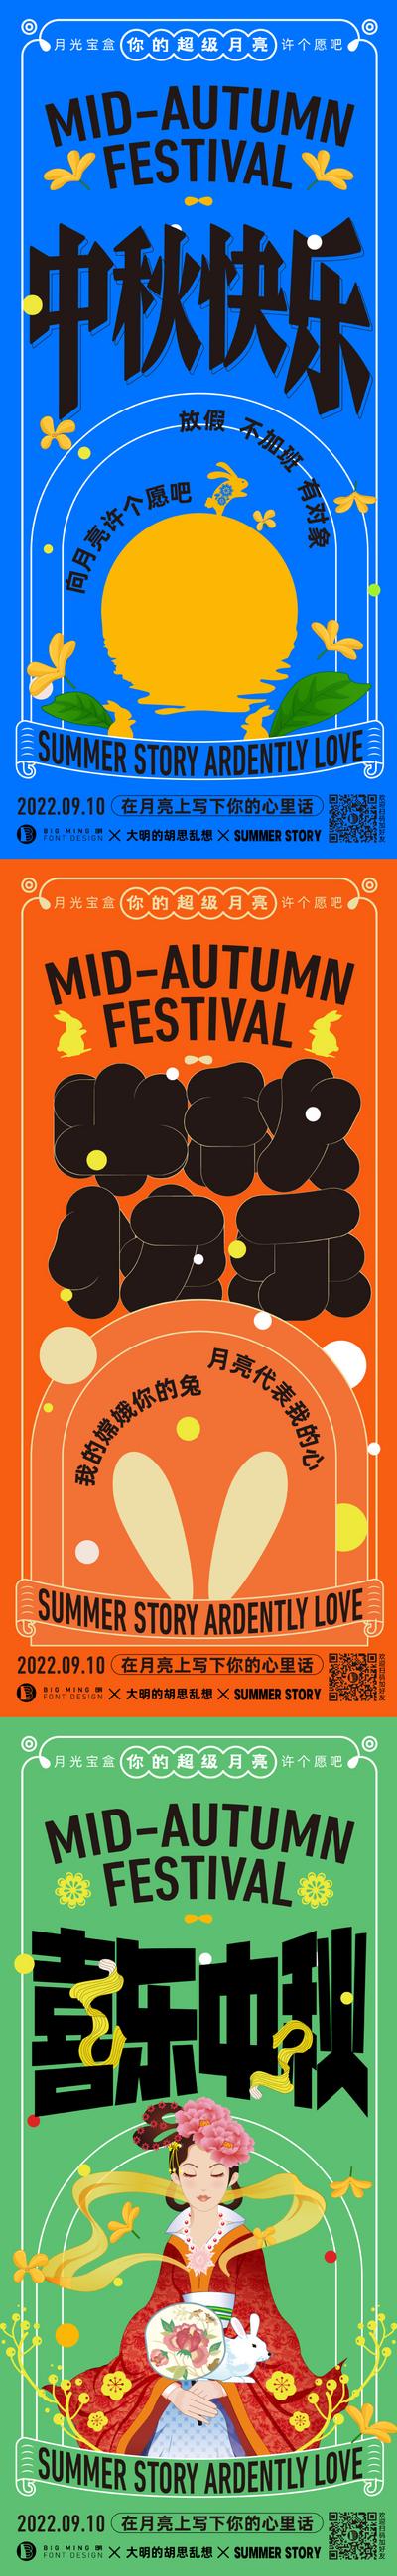 南门网 海报  中国传统节日  中秋节  中秋快乐    嫦娥   插画  版式 